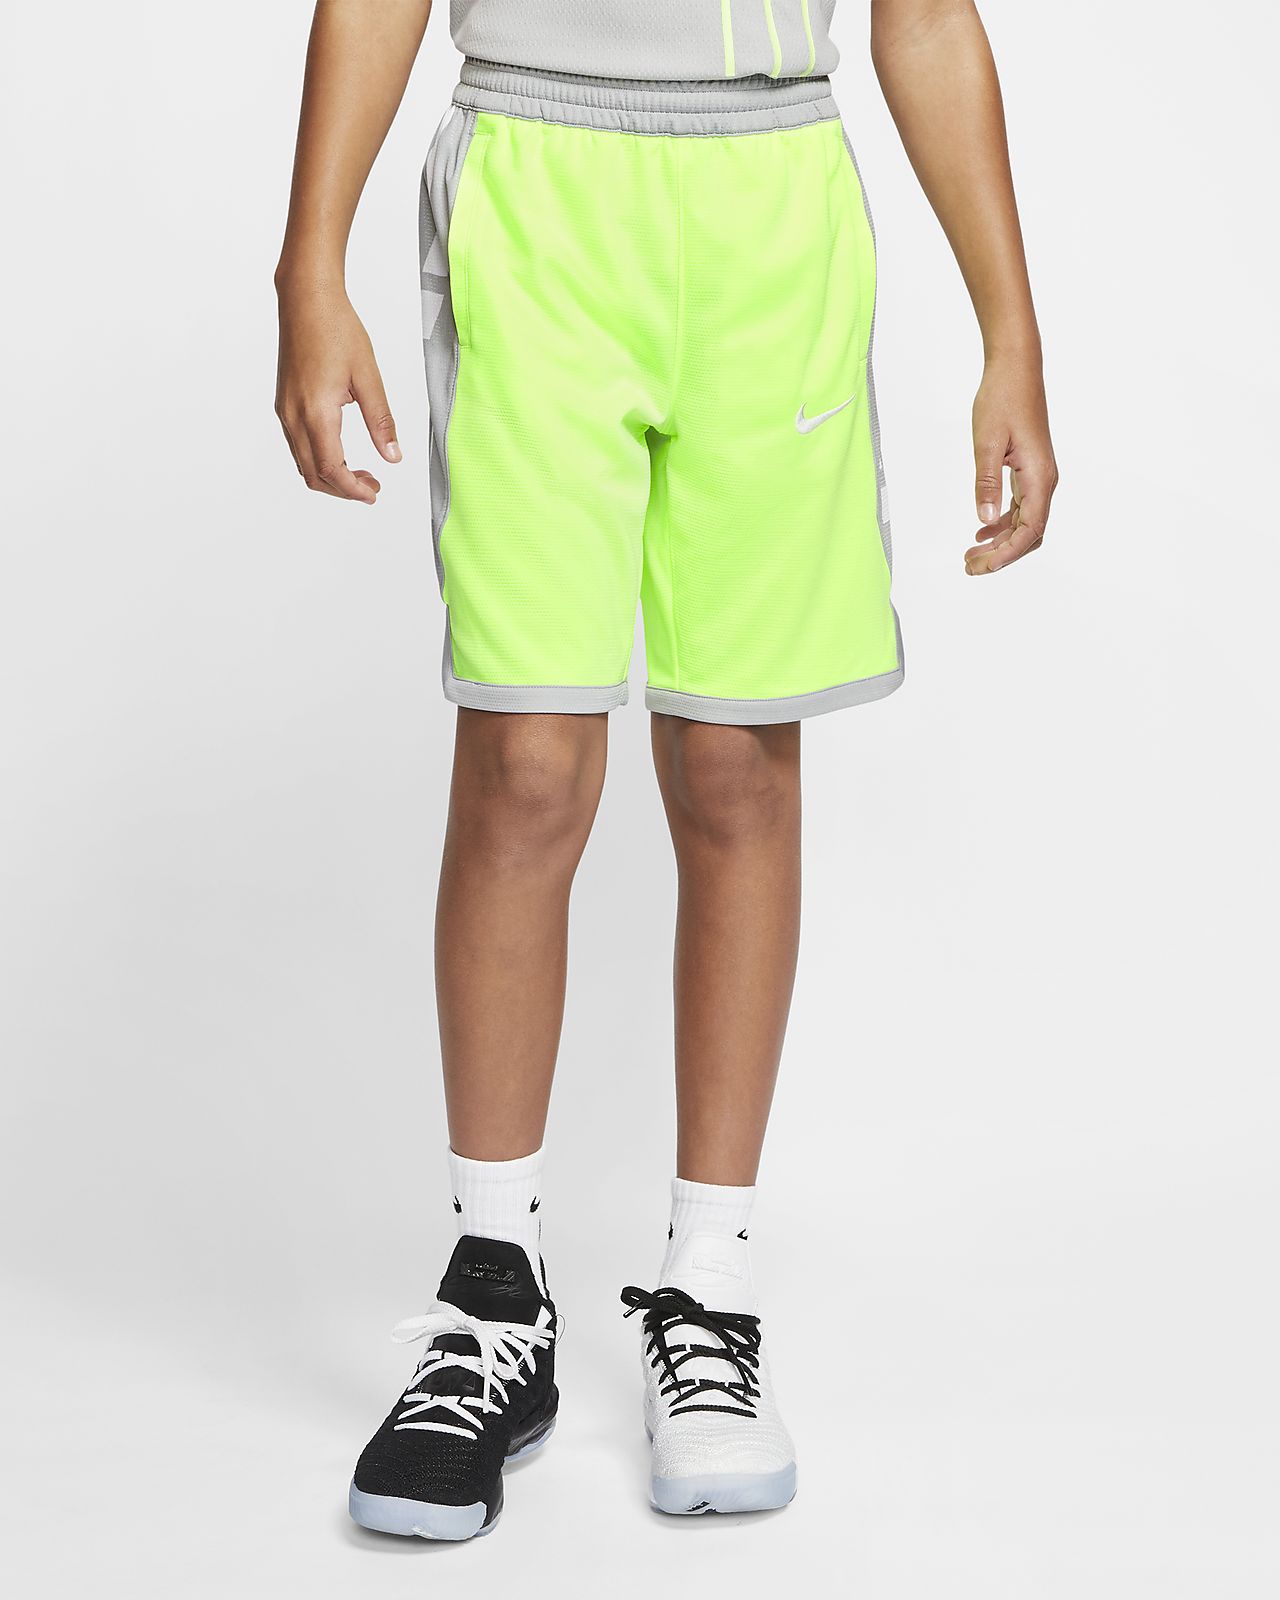 elite basketball shorts youth